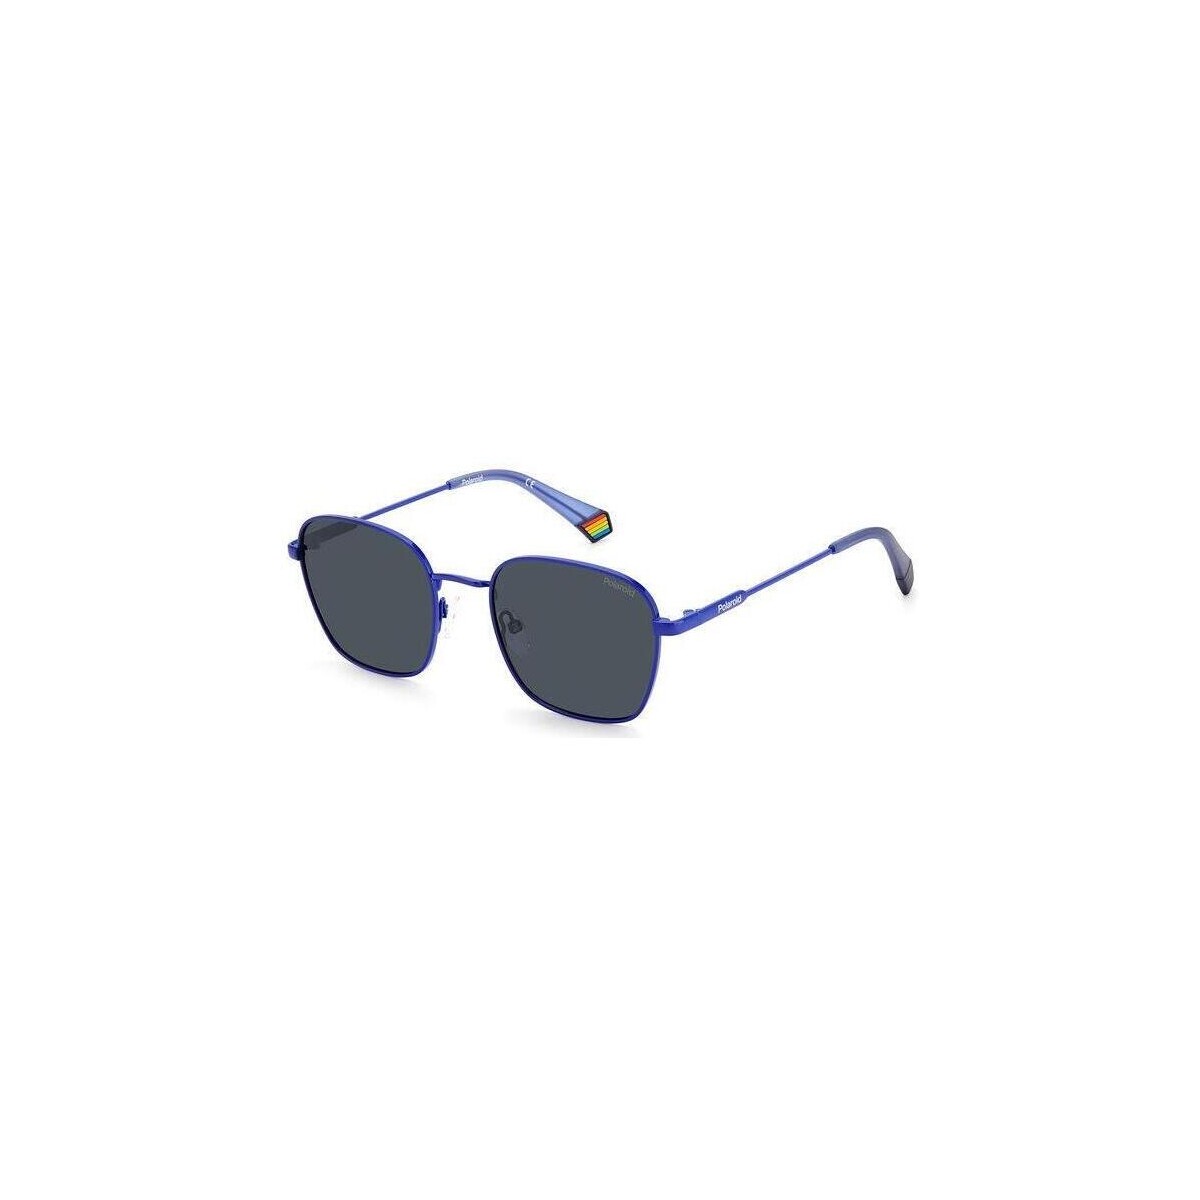 Montres & Bijoux Lunettes de soleil Polaroid PLD 6170/S Lunettes de soleil, Bleu/Fumée, 53 mm Bleu